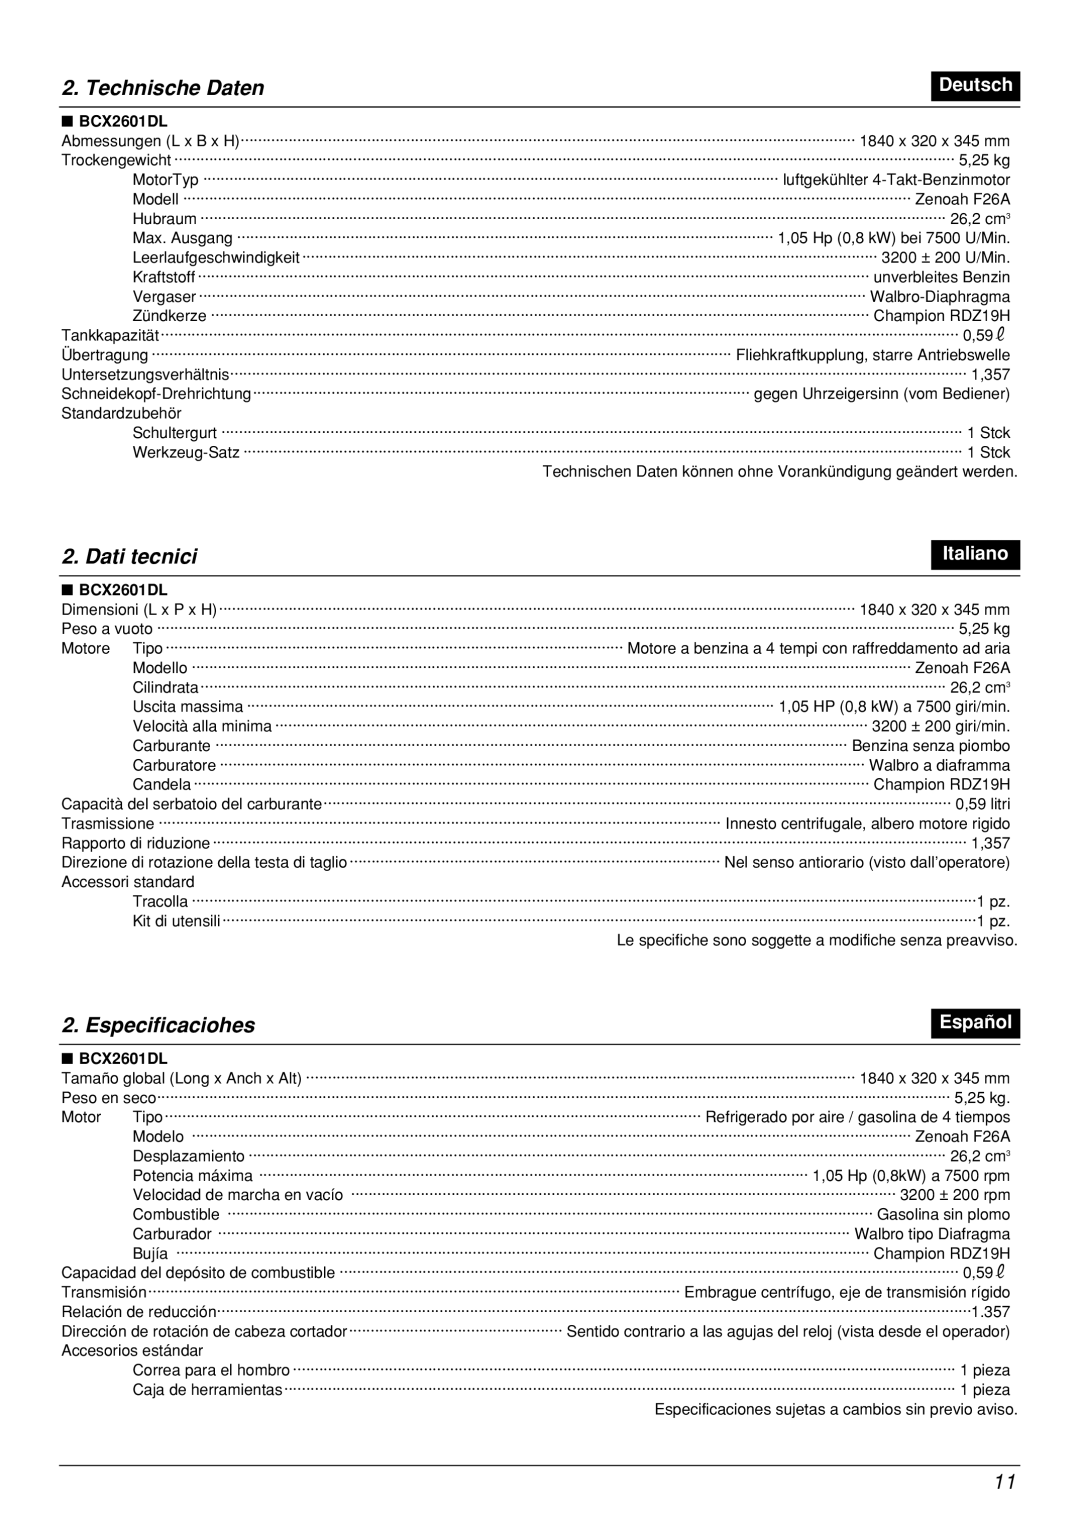 Zenoah BCX2601DL manual Technische Daten, Dati tecnici, Especificaciohes, Deutsch, Italiano, Español 